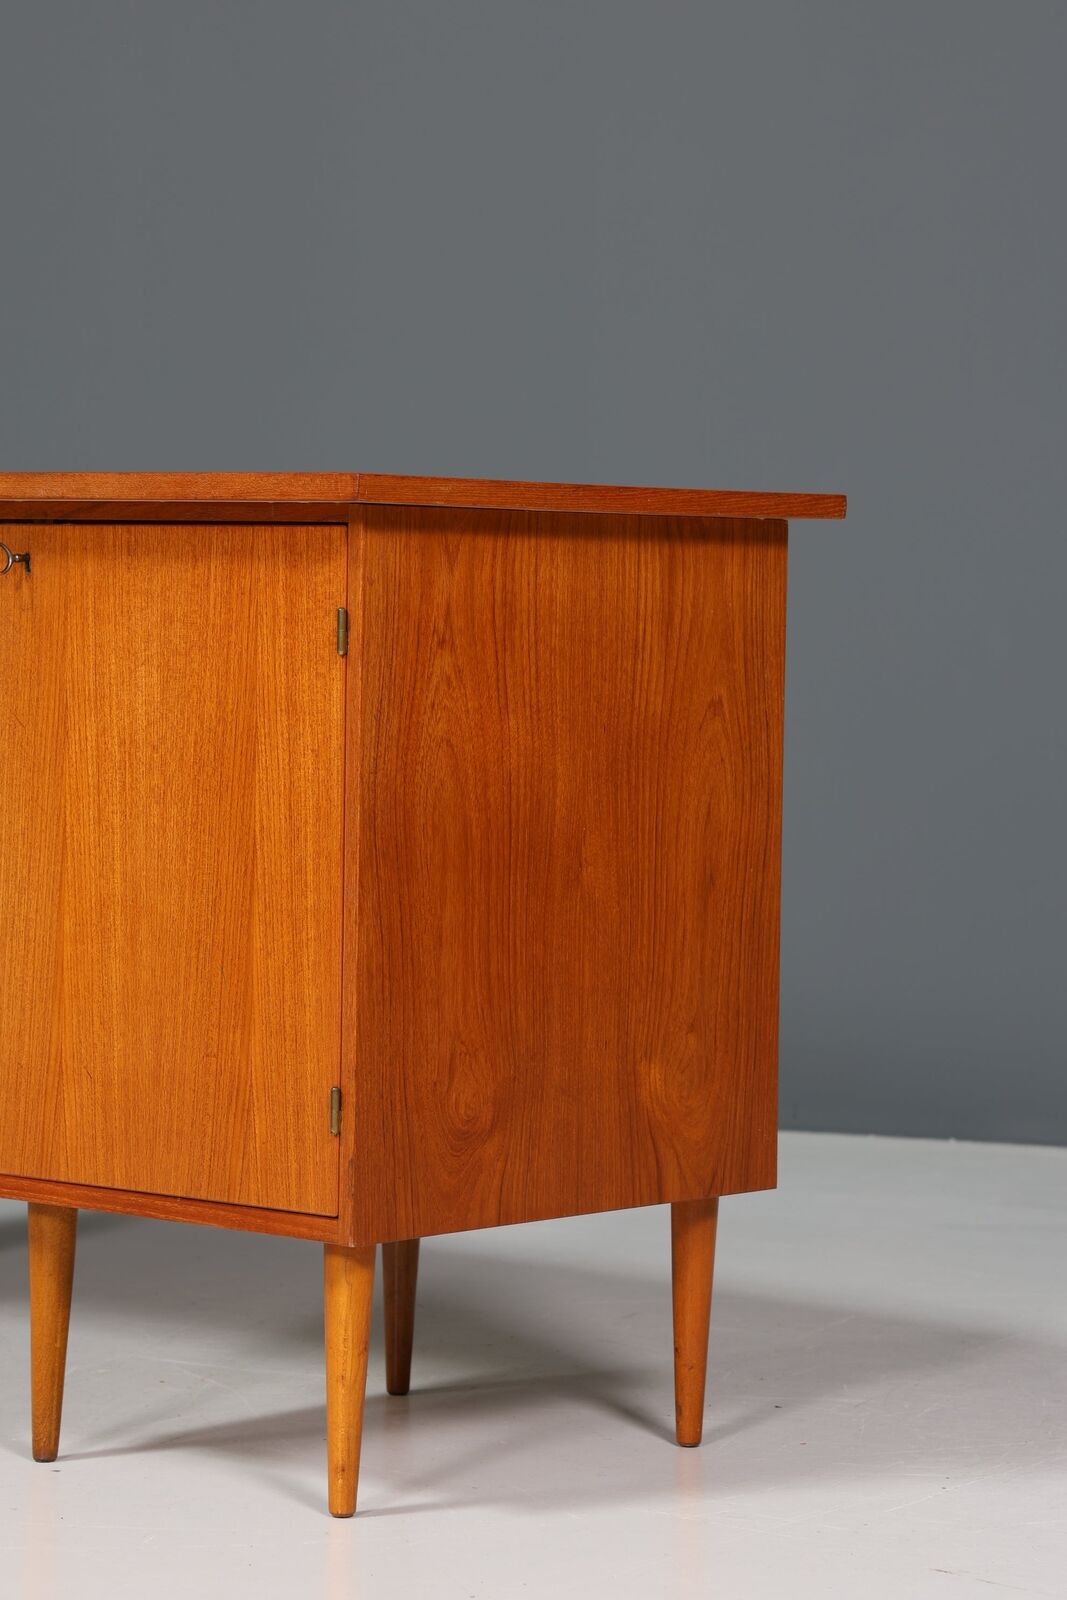 Stilvoller Mid Century Schreibtisch Made in Sweden Teak Holz Tisch Bürotisch